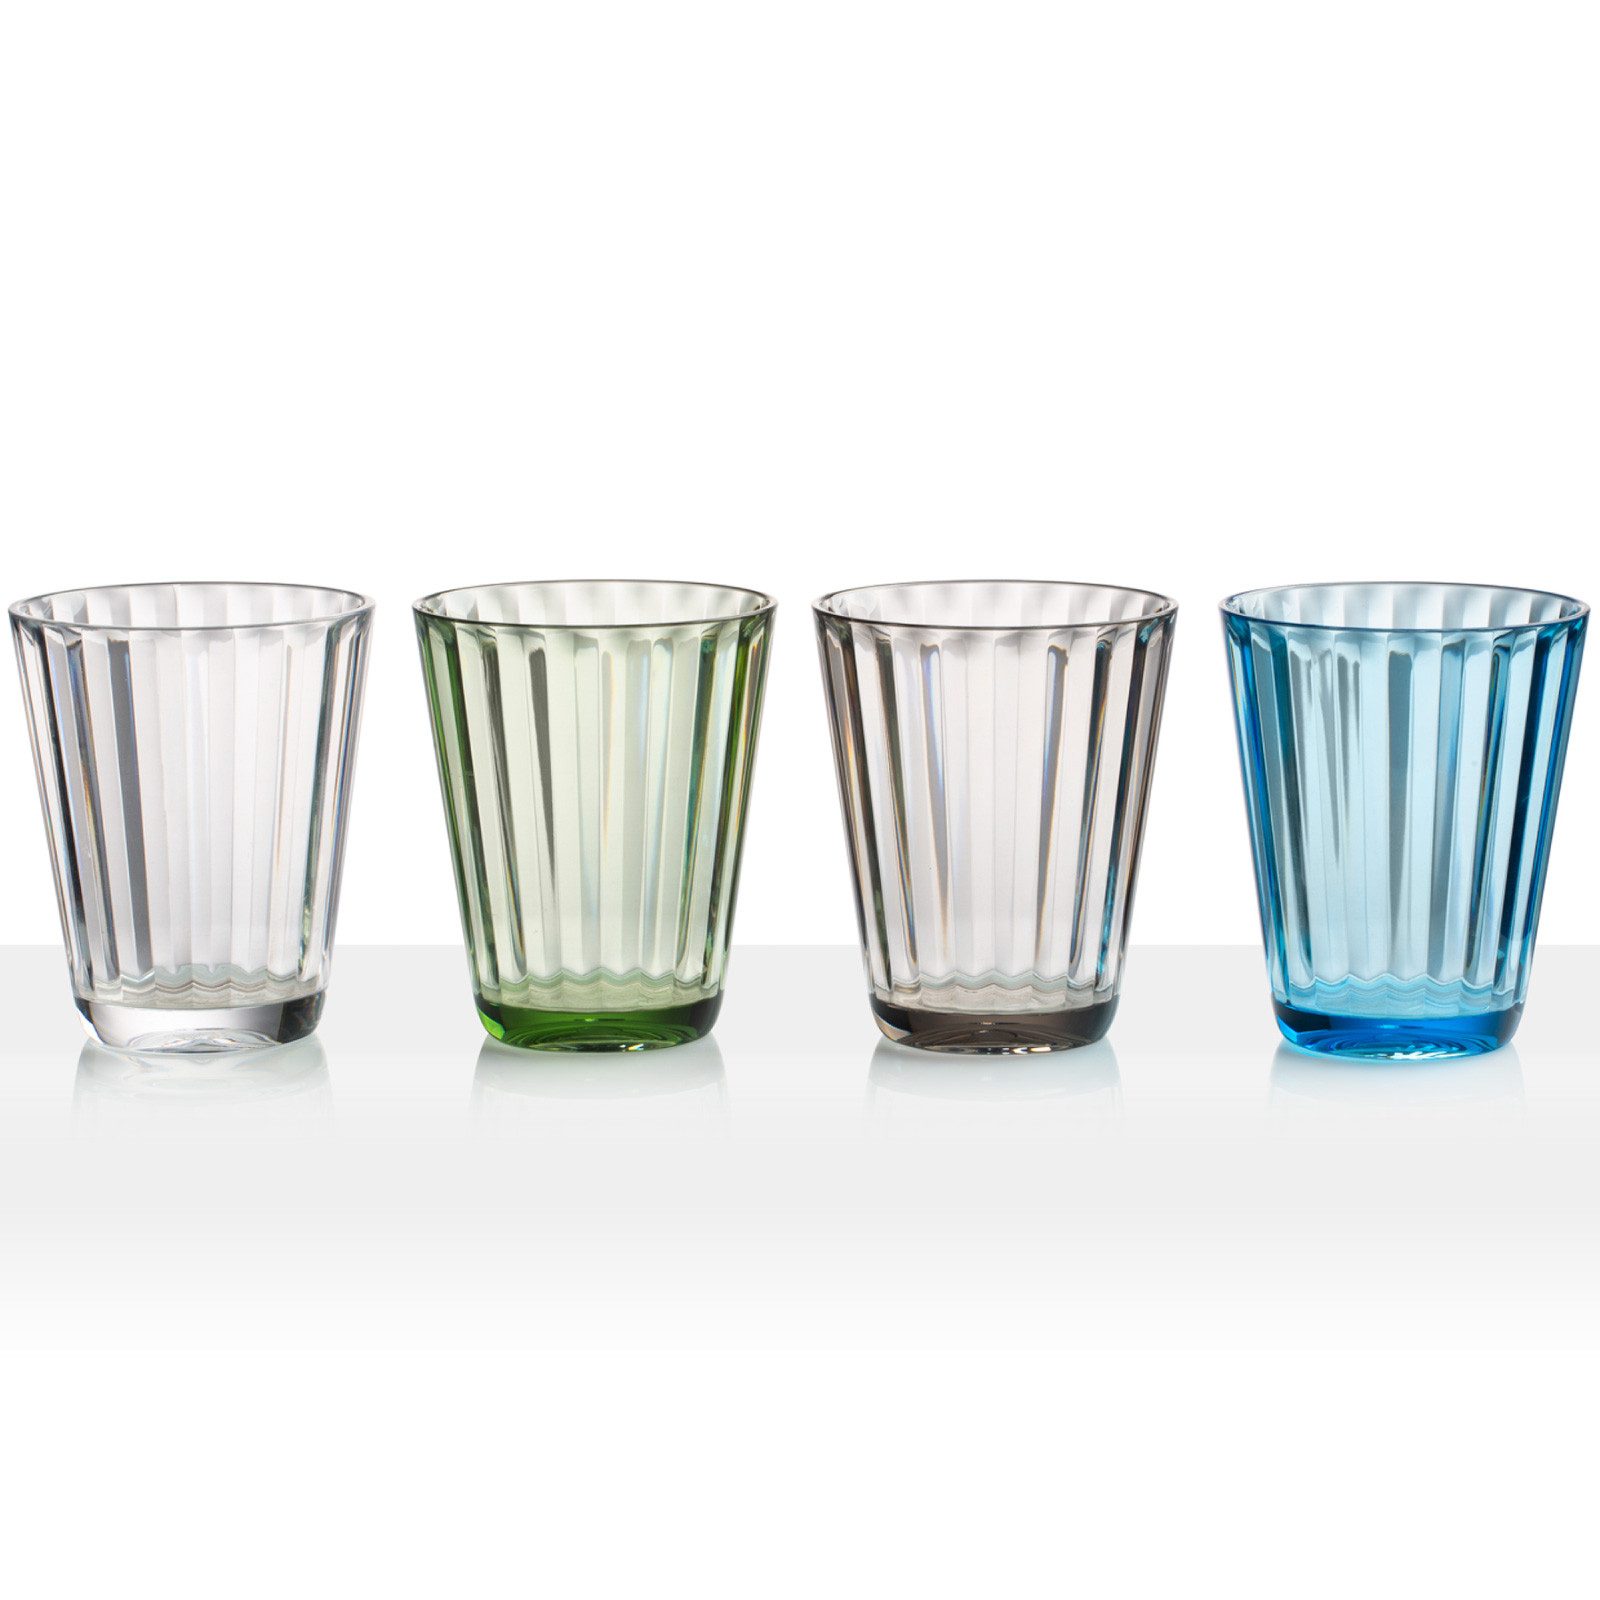 BRUNNER Glas Camping Glas 4er Set Trinkglas Jazz, 100% Polycarbonat, Reise Wasser Gläser Bruchfest 300 ml